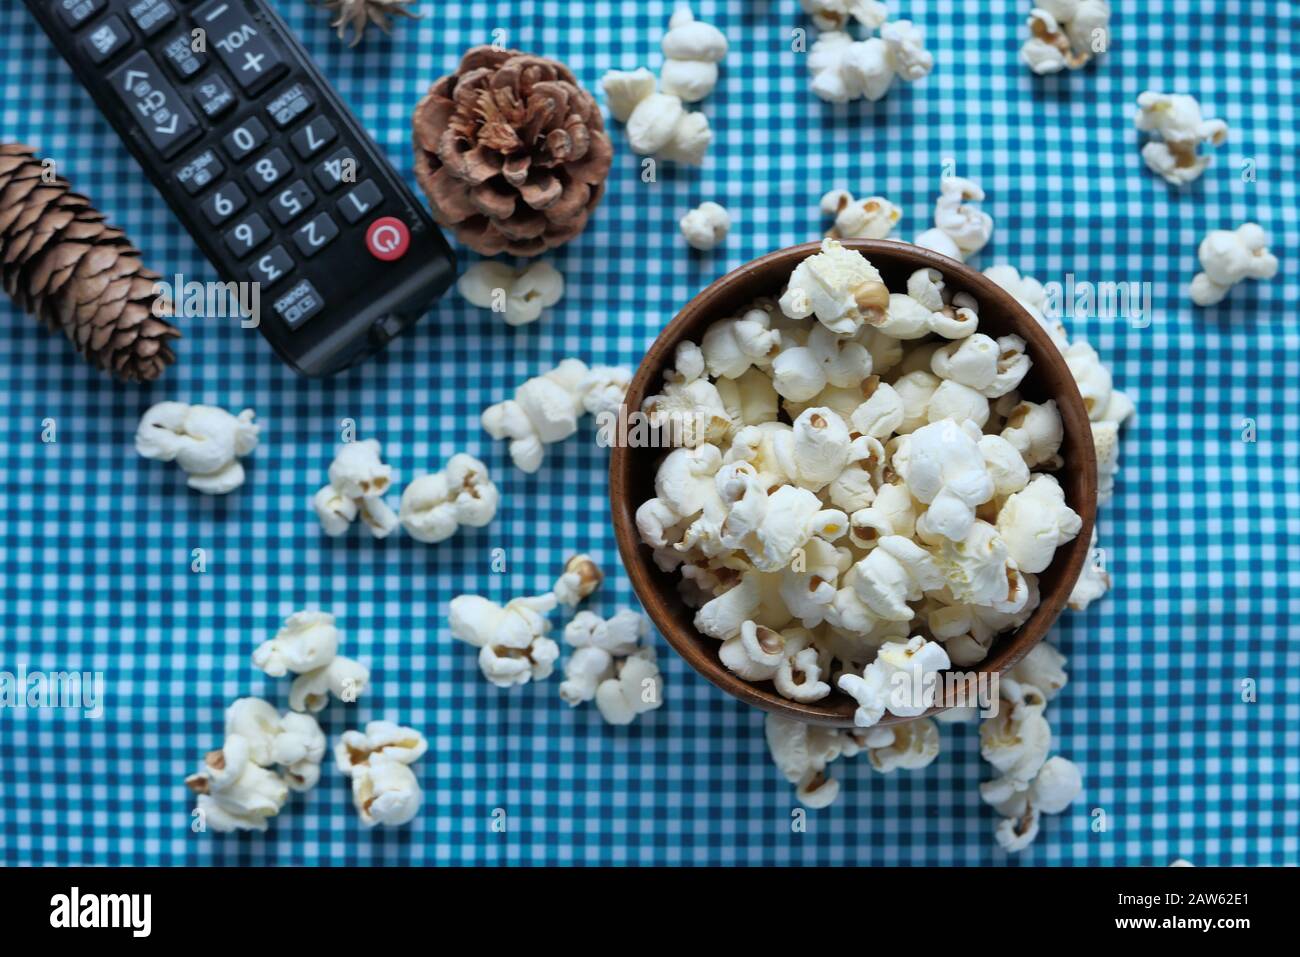 vue de dessus du popcorn et de la télécommande de télévision sur la table Banque D'Images